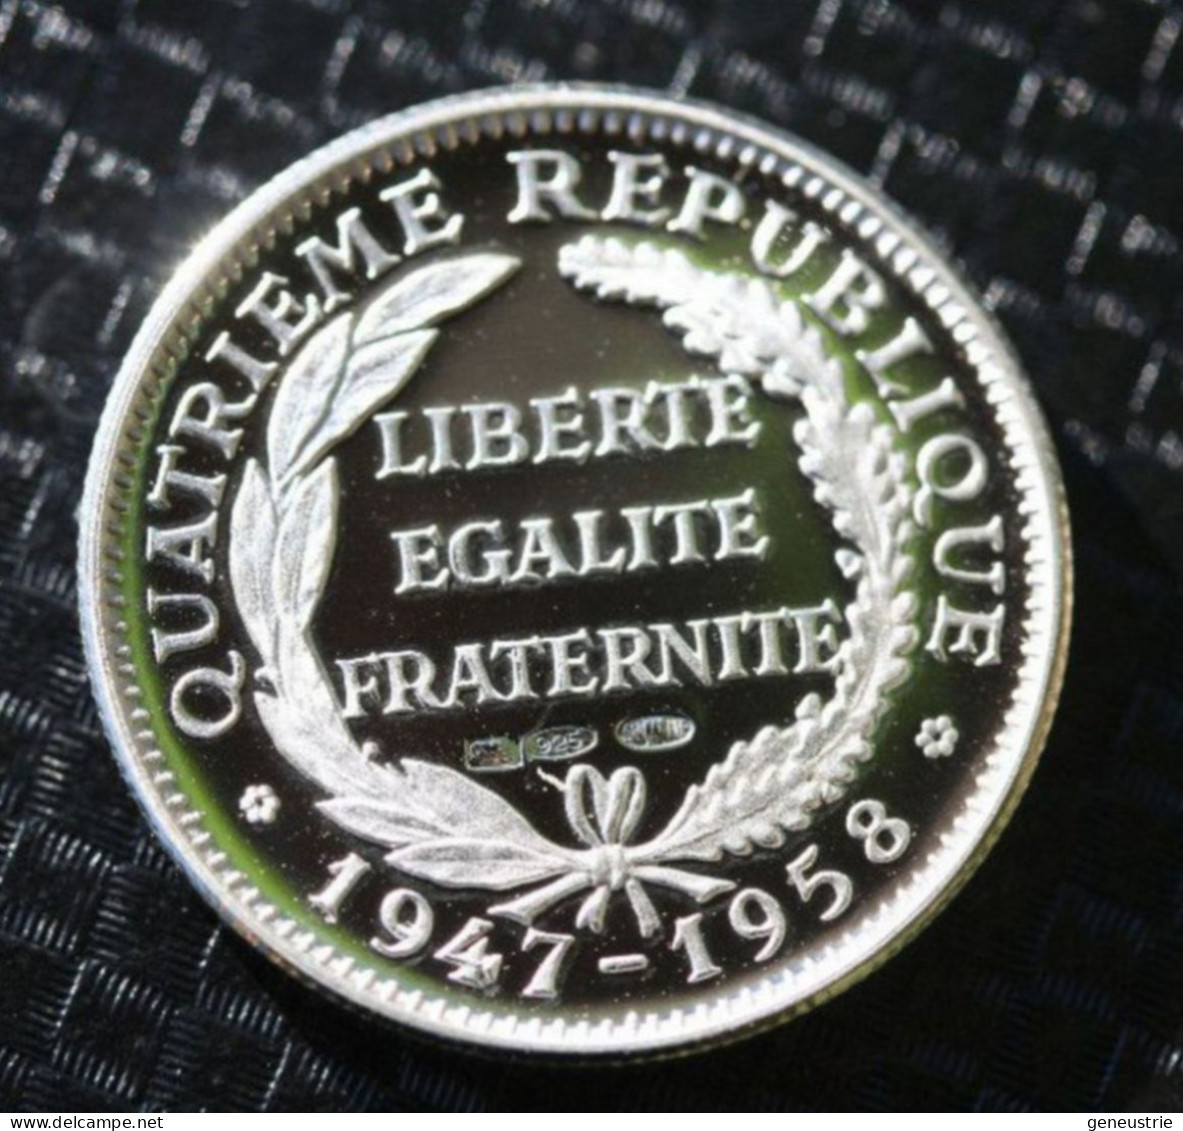 Beau Jeton Argent Poinçonnée 925 - 21mm "Président De La République Vincent Auriol" French President Token - Souvenir-Medaille (elongated Coins)